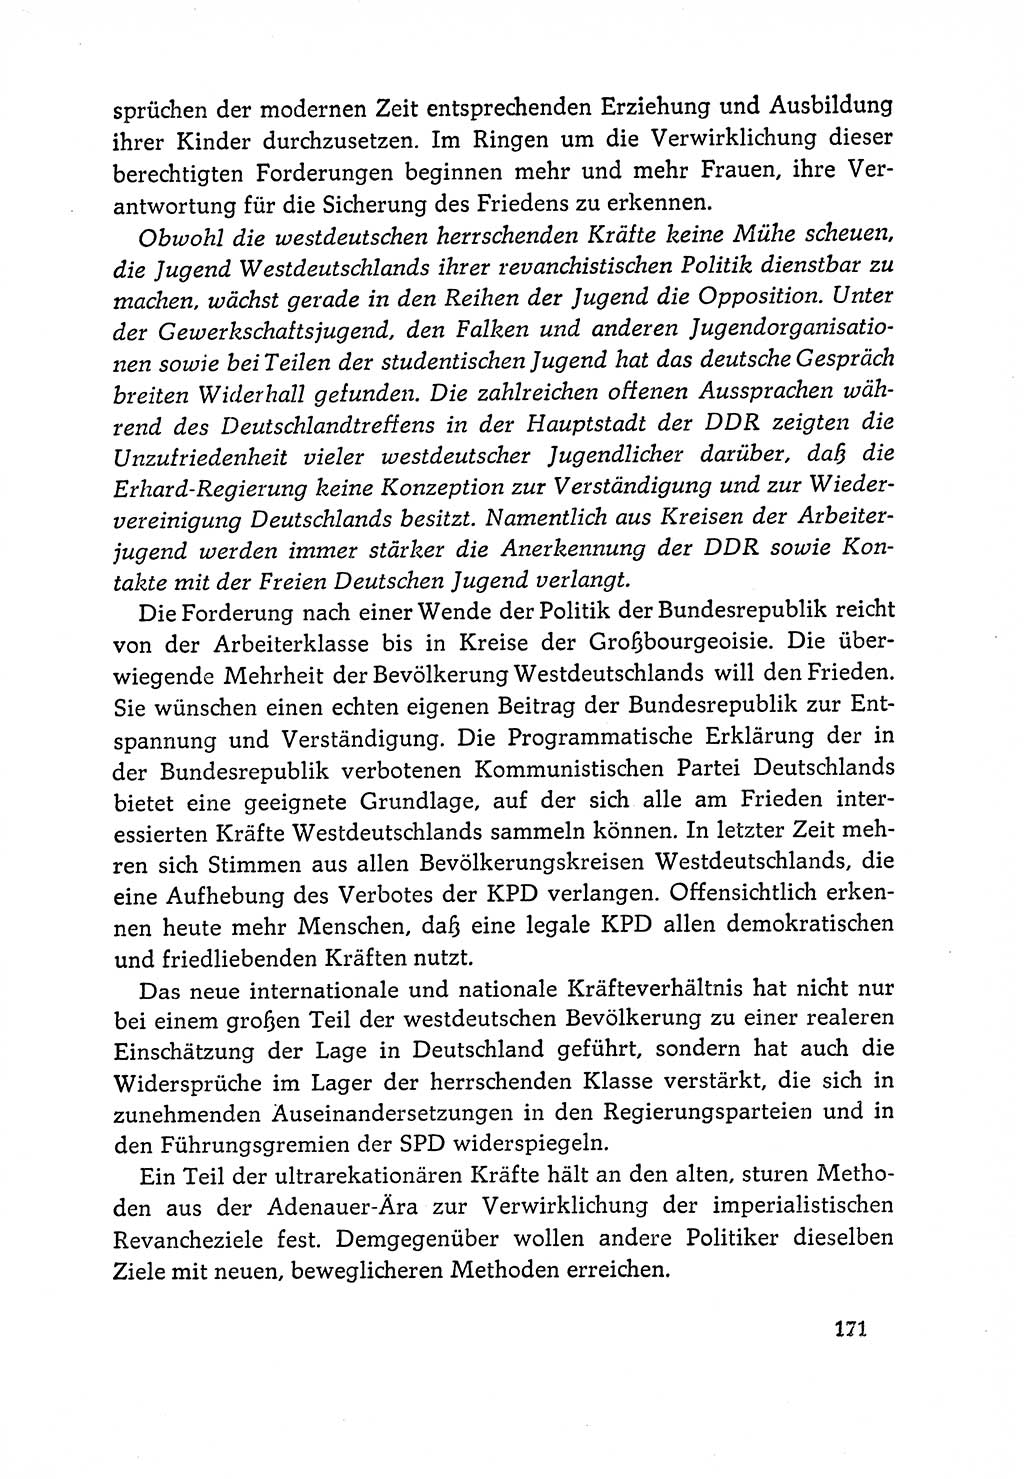 Dokumente der Sozialistischen Einheitspartei Deutschlands (SED) [Deutsche Demokratische Republik (DDR)] 1964-1965, Seite 171 (Dok. SED DDR 1964-1965, S. 171)